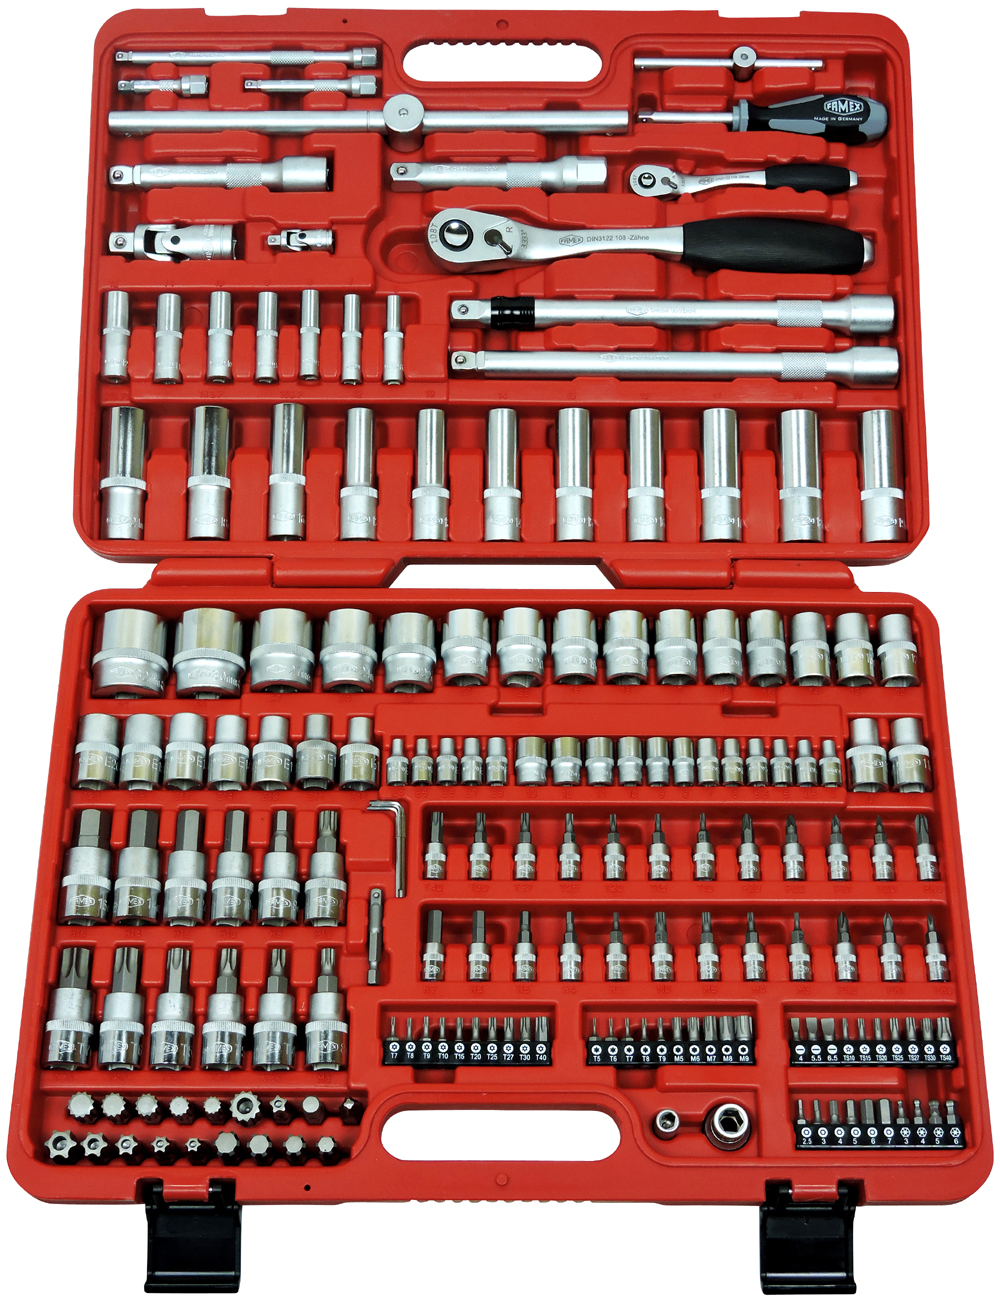 Werkzeuge günstig online kaufen - FAMEX 604-09 Trolley ABS Werkzeugkoffer  Komplettset High-End Qualität mit 174-teiligem Steckschlüsselsatz